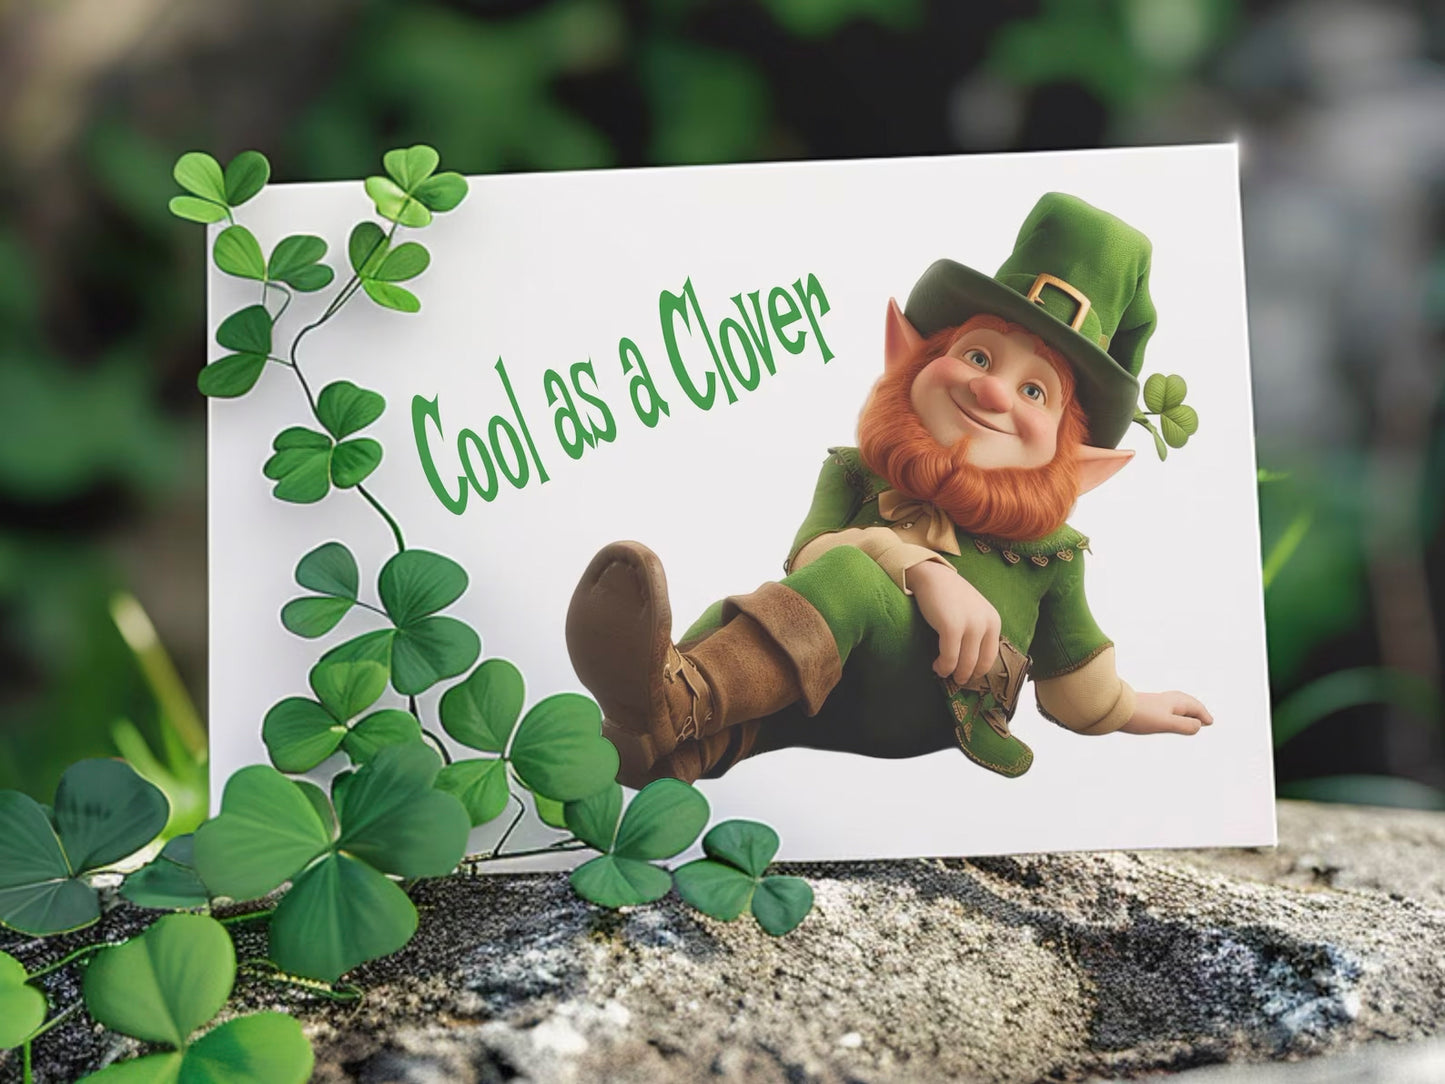 Leprechaun Clipart Bundle St Patrick’s Day Clipart